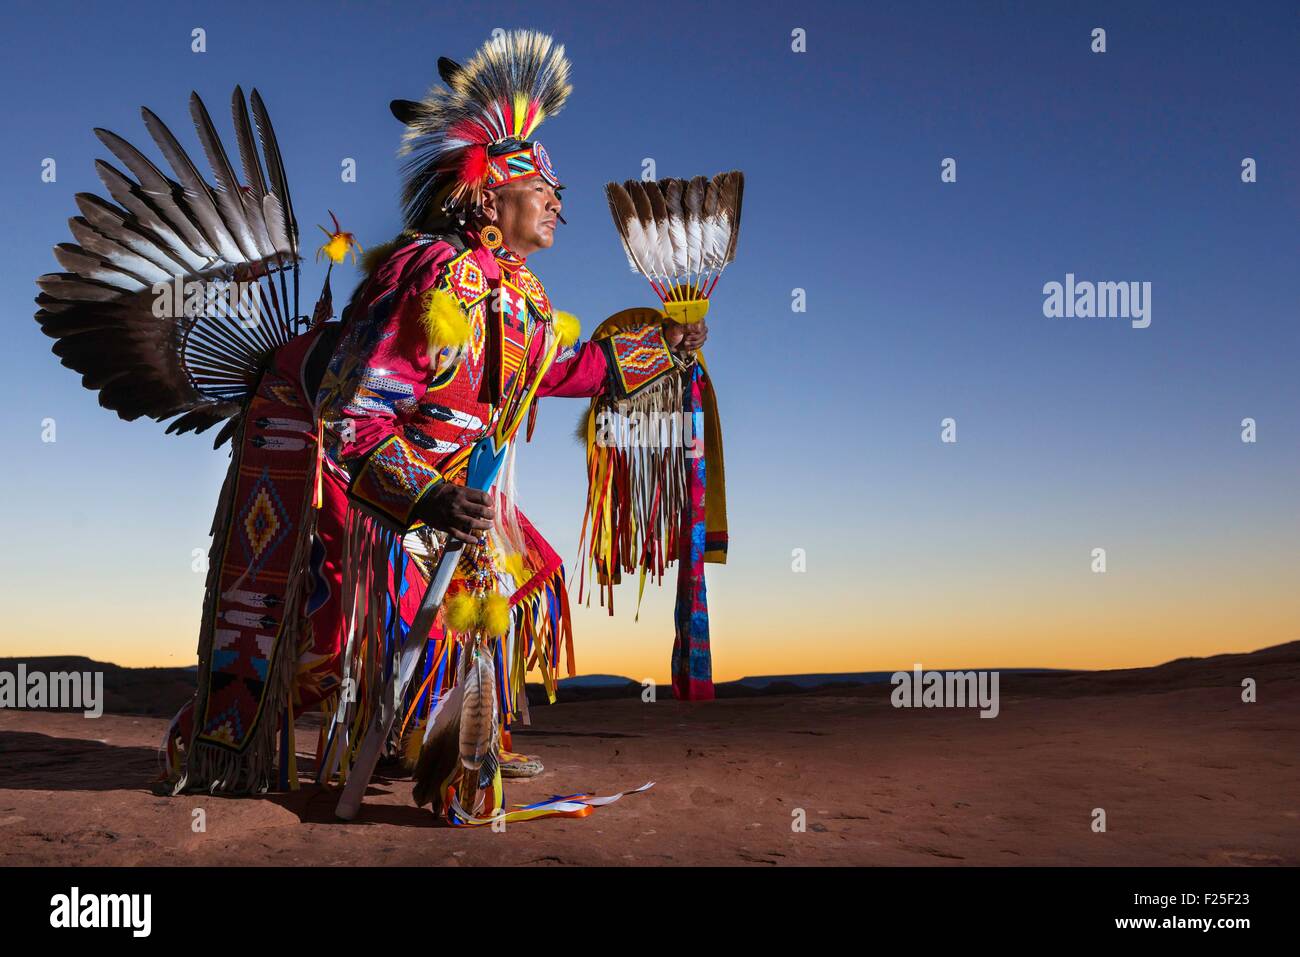 USA, Arizona, Monument Valley Navajo Tribal Park, Navajo Anderson Chee Stockfoto